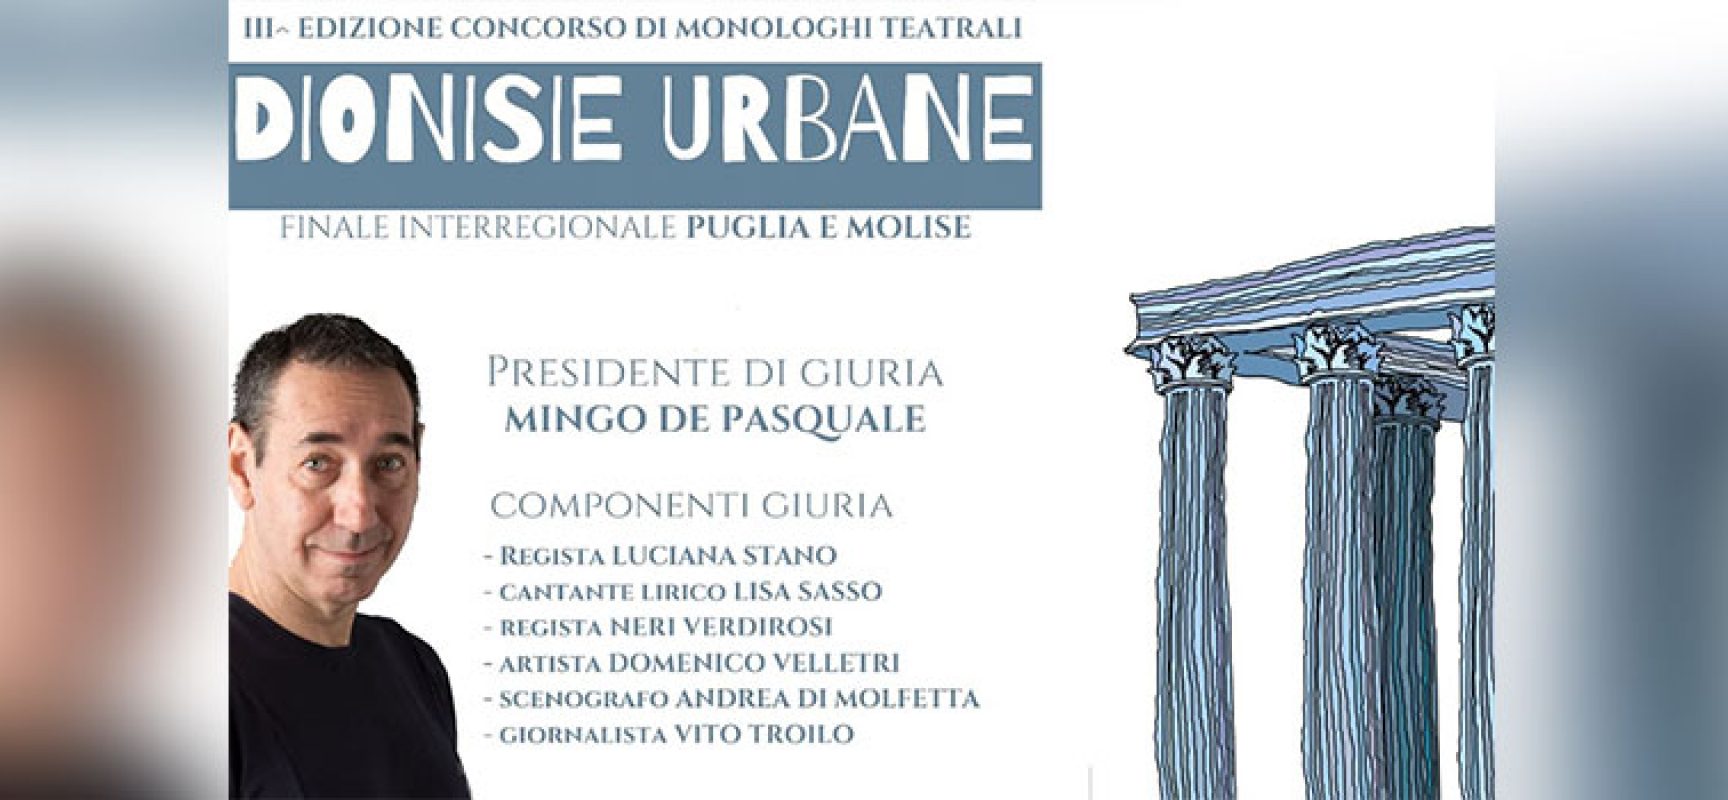 Premio teatrale “Dionisie Urbane”: Mingo De Pasquale presidente di giuria